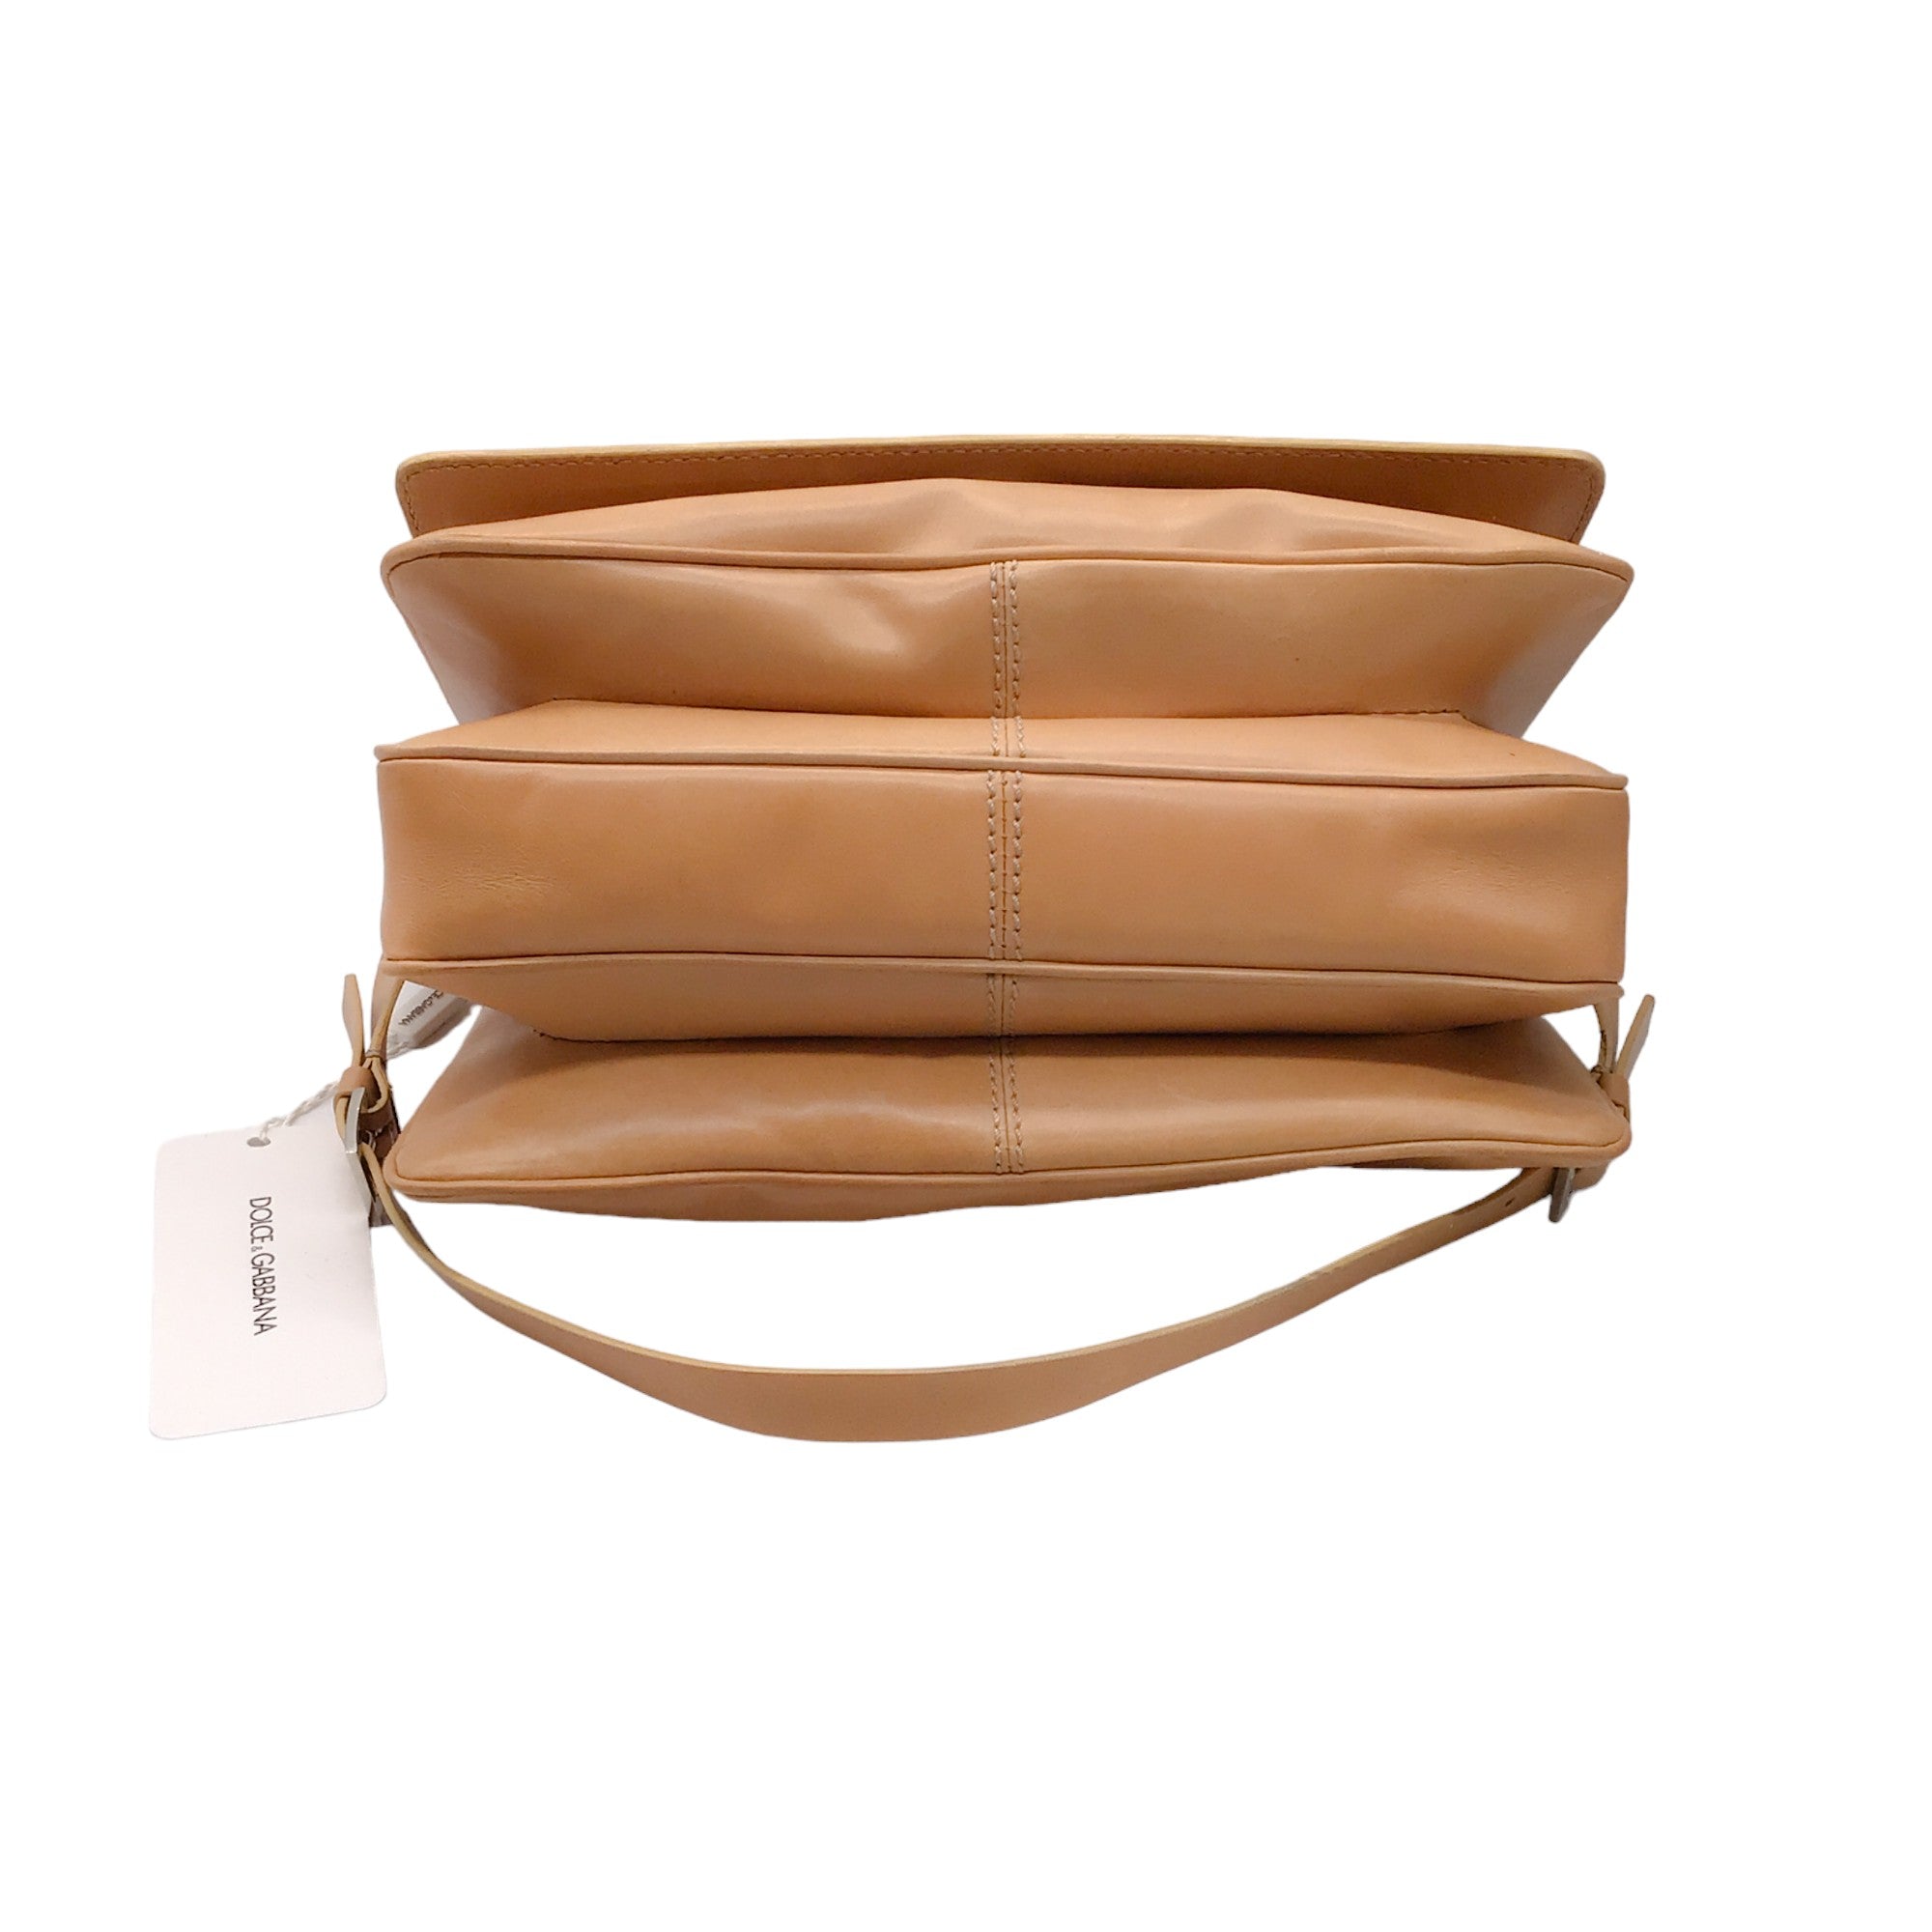 Dolce & Gabbana Beige Calfskin Leather Flap Shoulder Bag